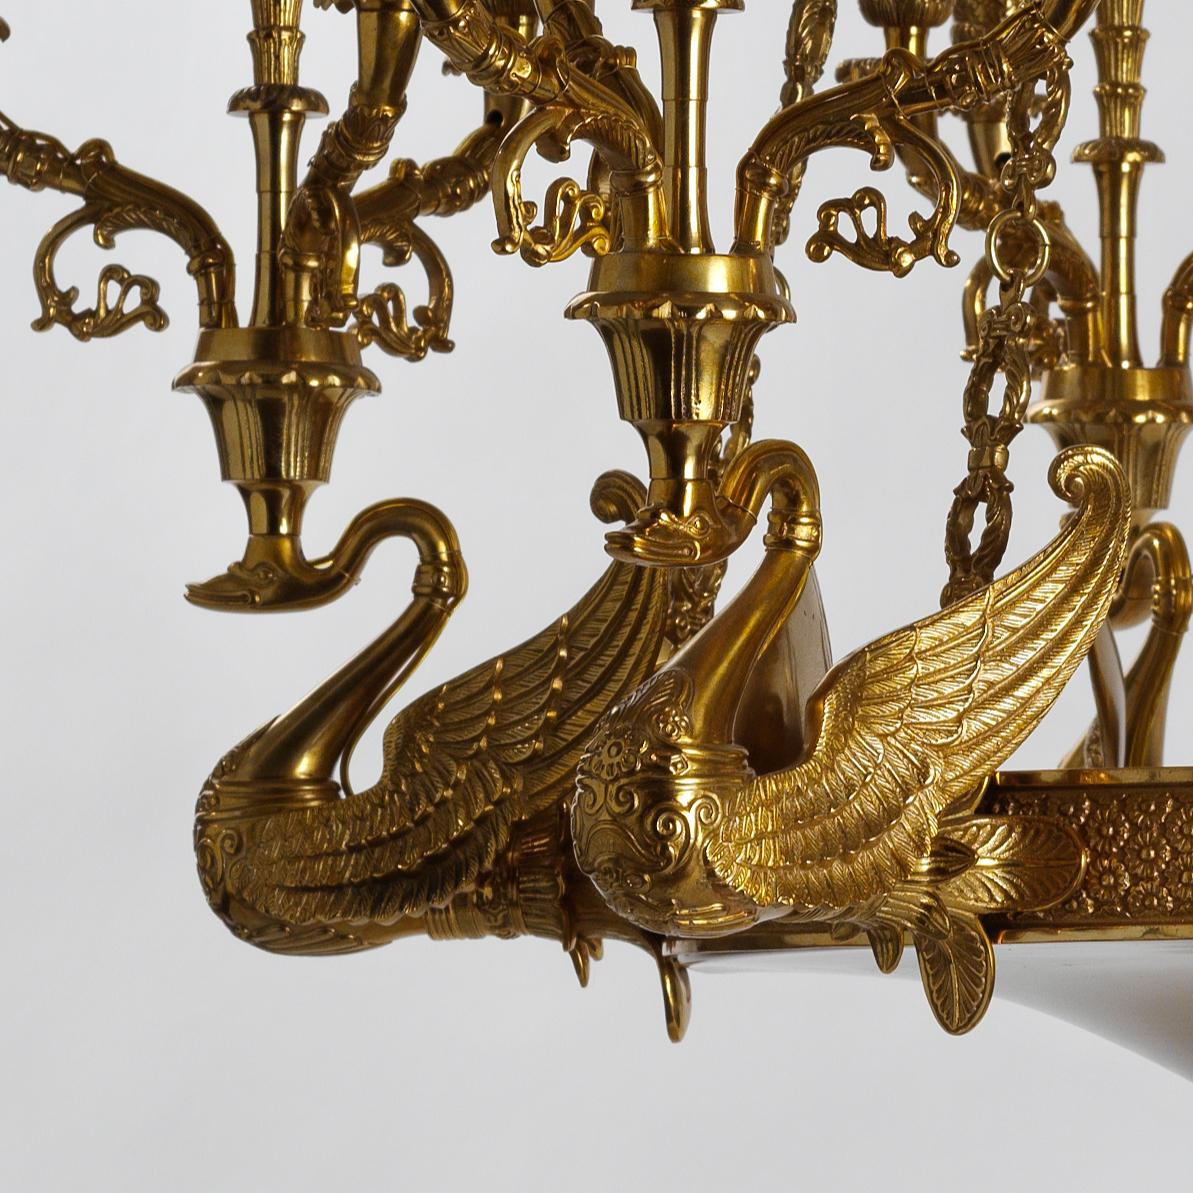 Dieser Kronleuchter im französischen Empire-Stil aus vergoldeter Bronze von Gherardo Degli Albizzi zeichnet sich durch handgemeißelte Details von höchster Qualität aus.
Die oberen Kronen zeichnen sich durch eine reiche pflanzliche Verzierung mit